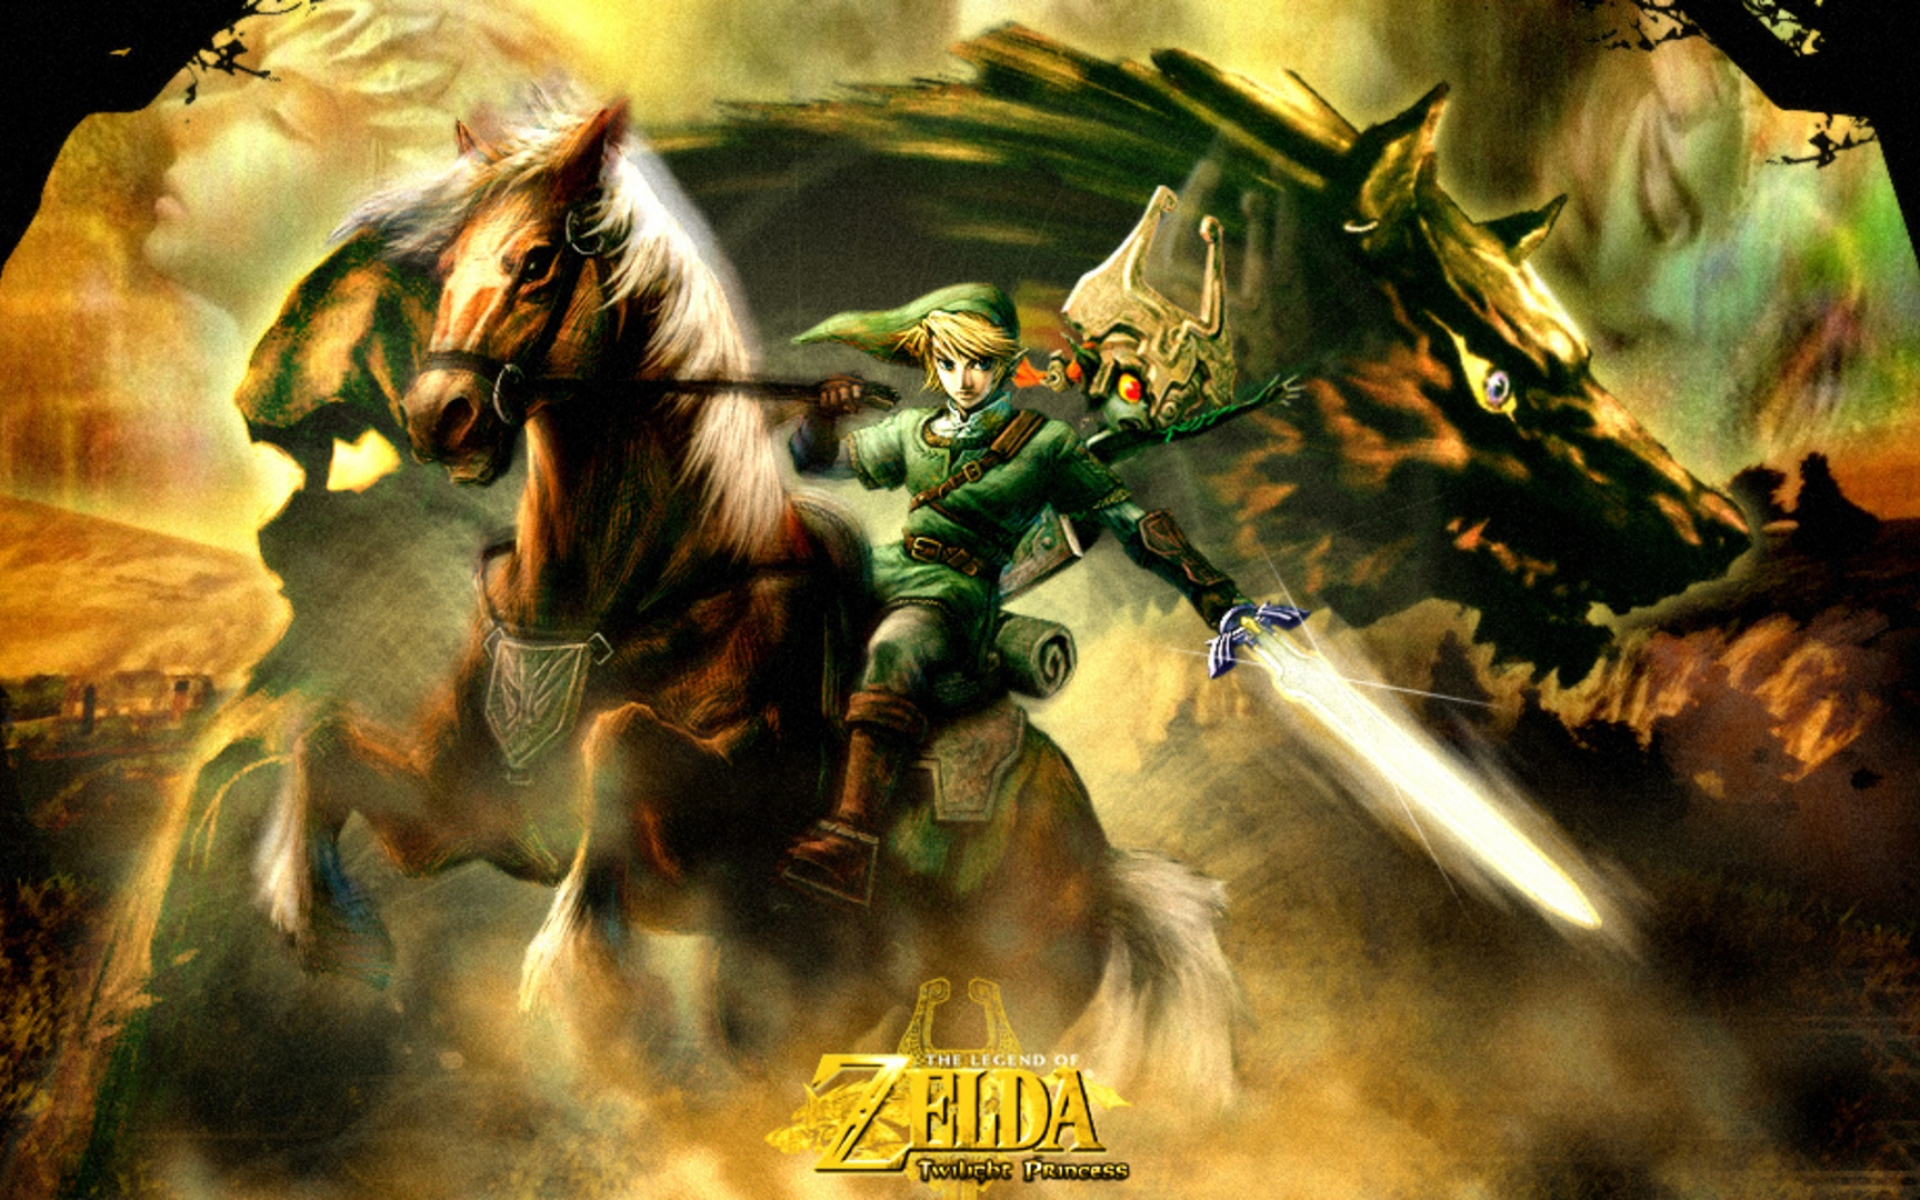 Descarga Wallpapers Hd Anime Zelda - Nintendo 3ds Skin Zelda - HD Wallpaper 